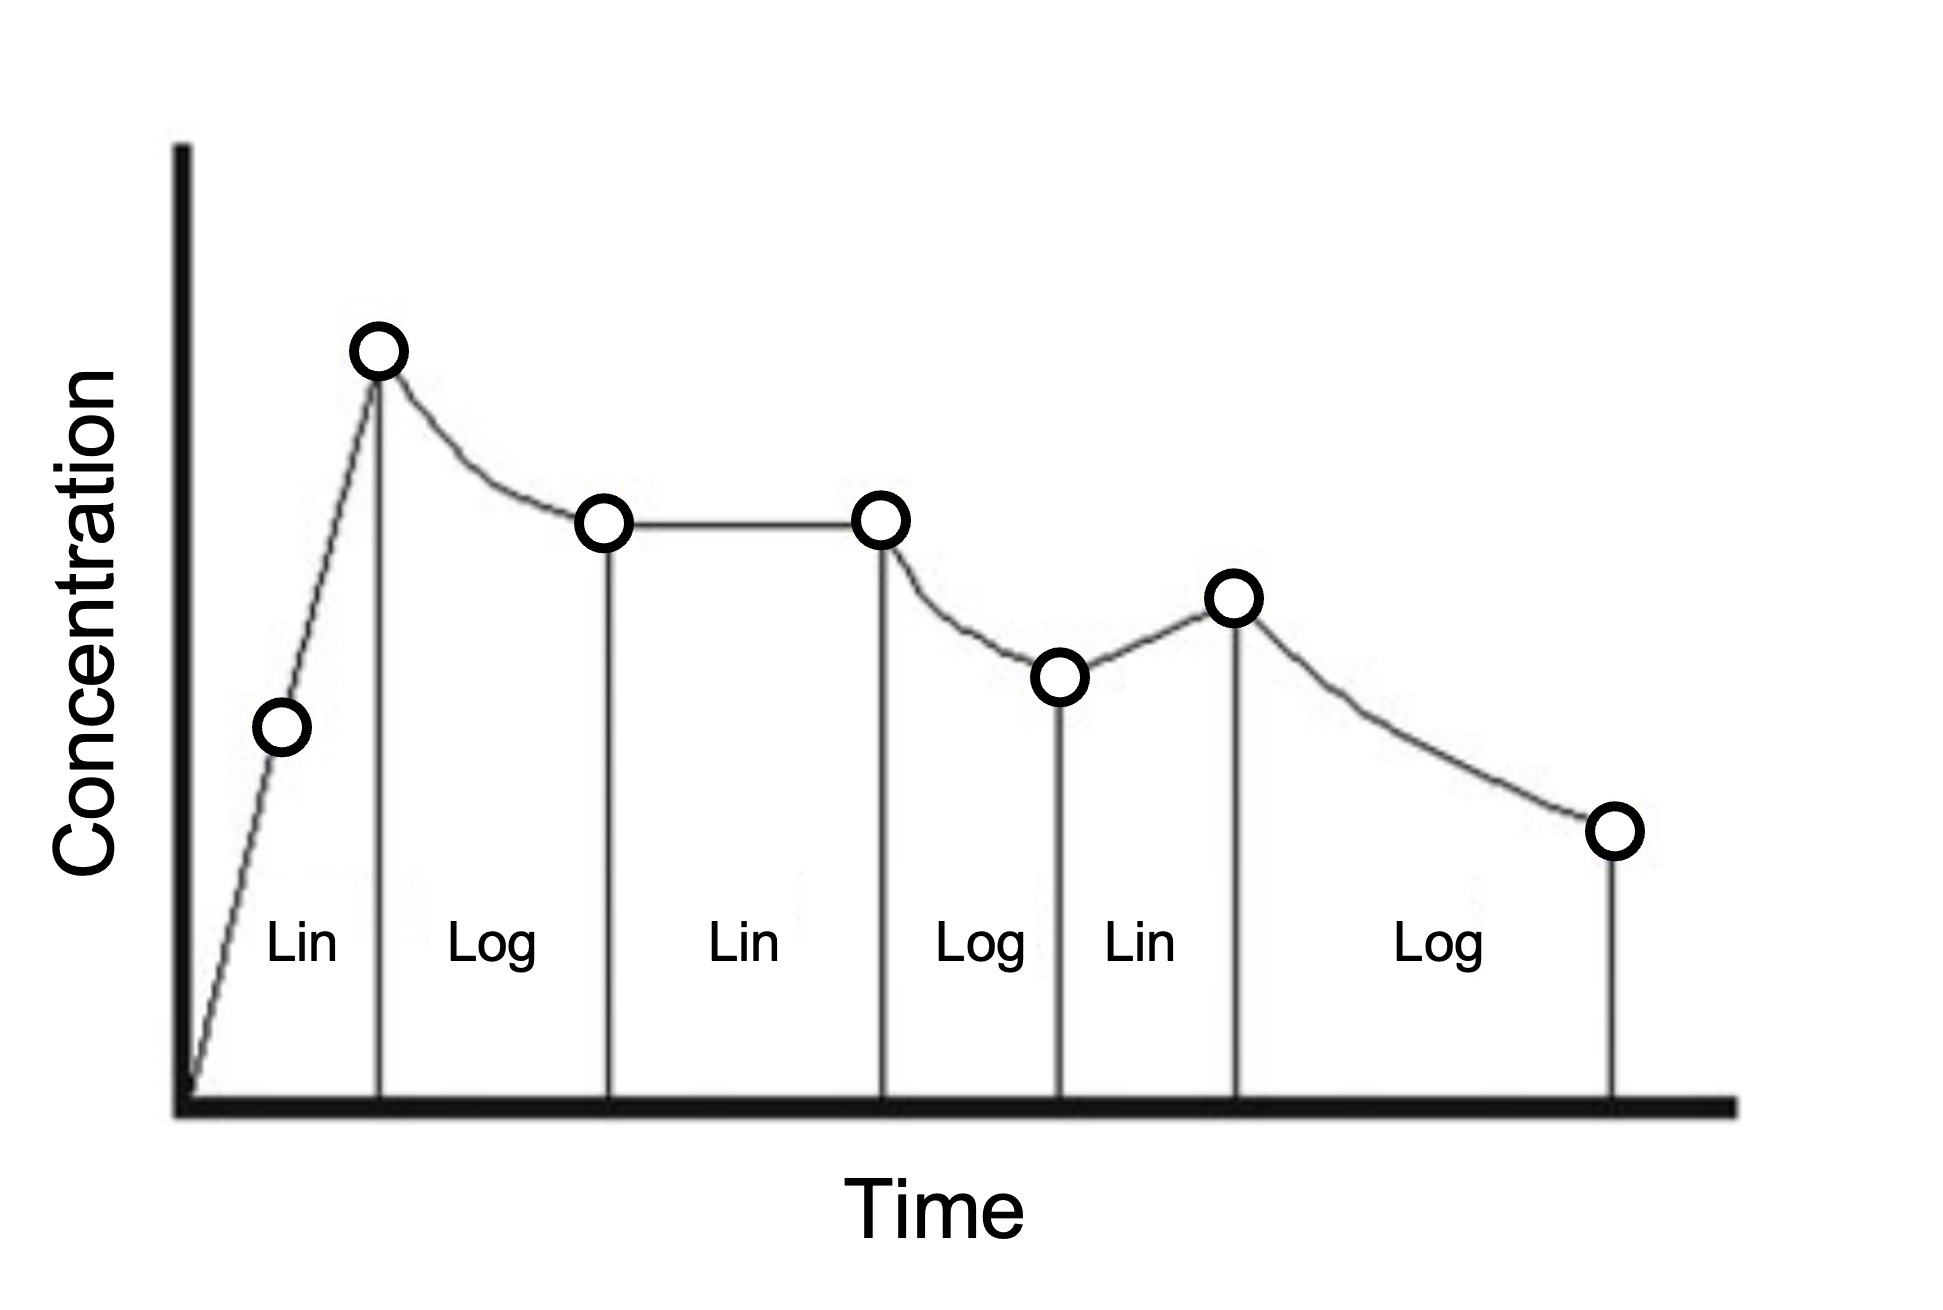 농도 증가/감소 구간에서 선형사다리꼴공식/로그-선형사다리꼴을 각각 사용하는 예